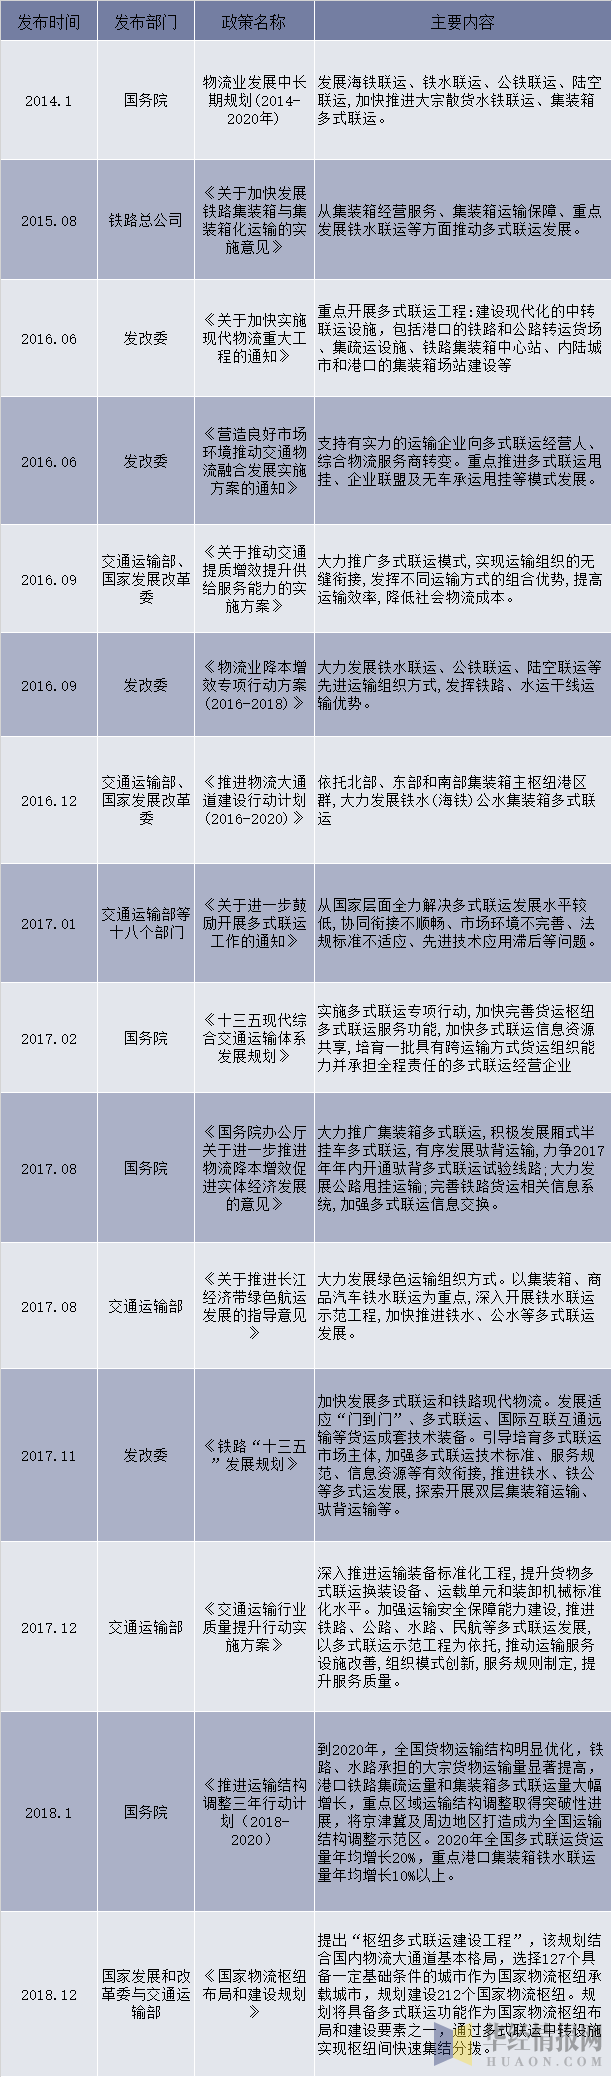 2014-2018年中国多式联运行业相关产业政策及规划